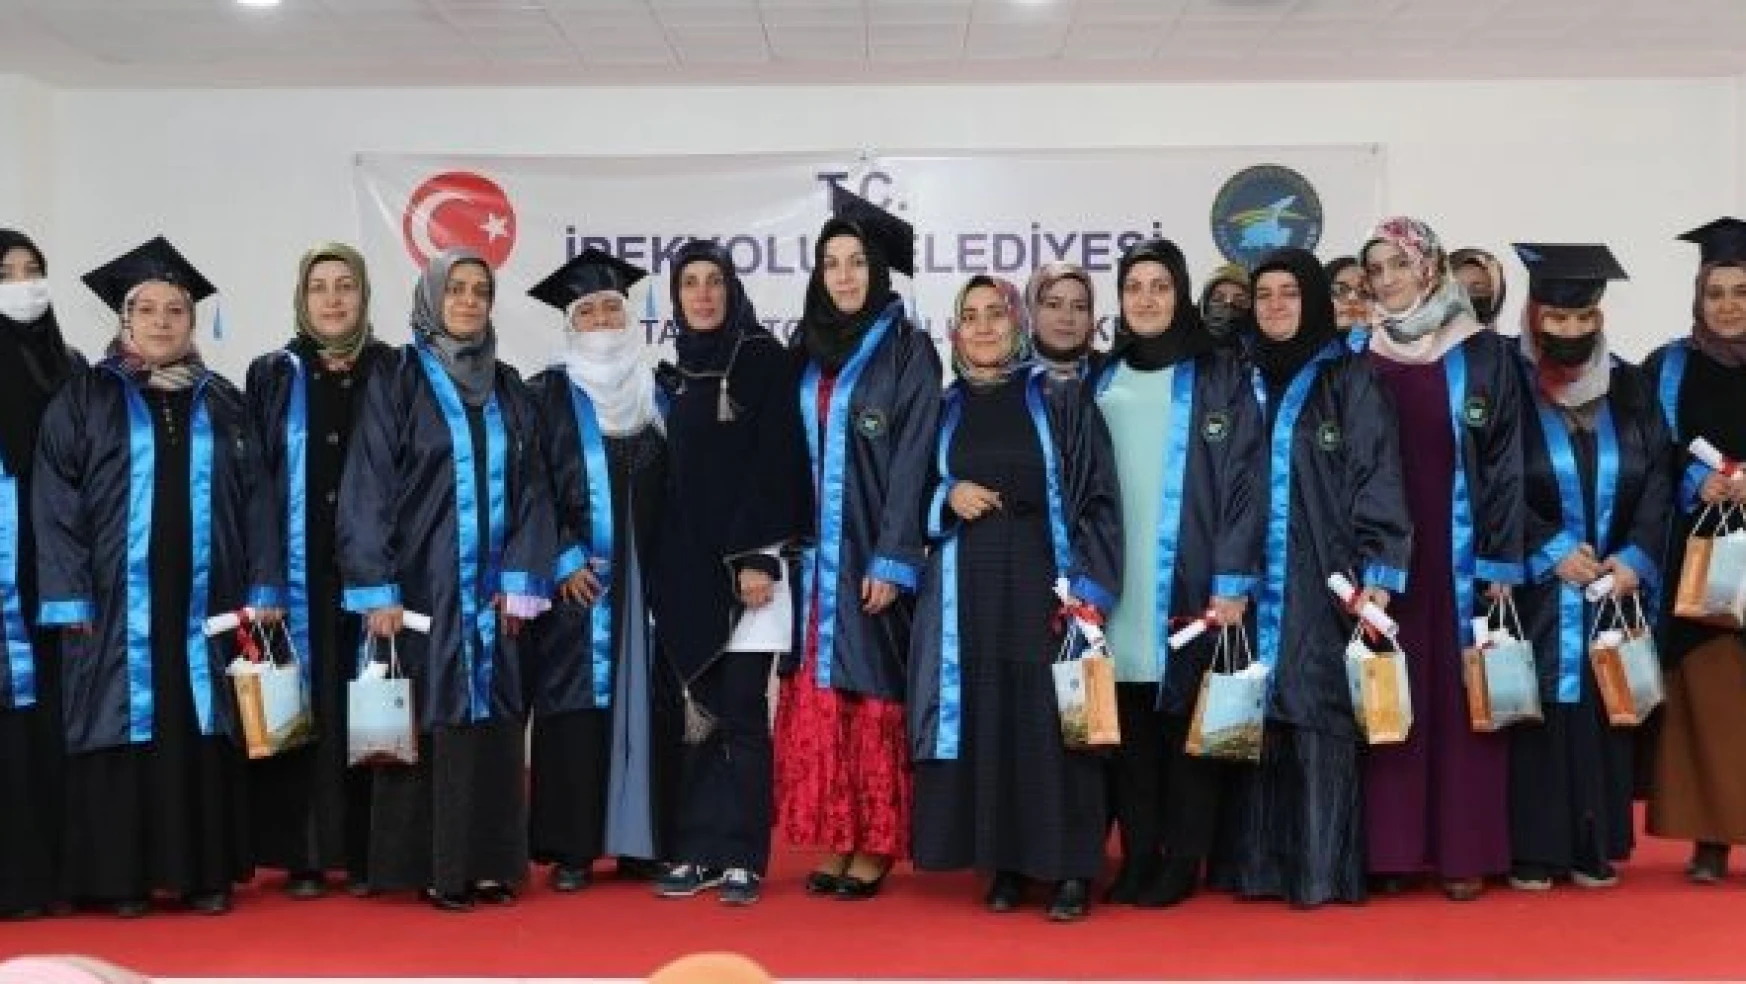 İpekyolu'nda kadınların mezuniyet coşkusu devam ediyor